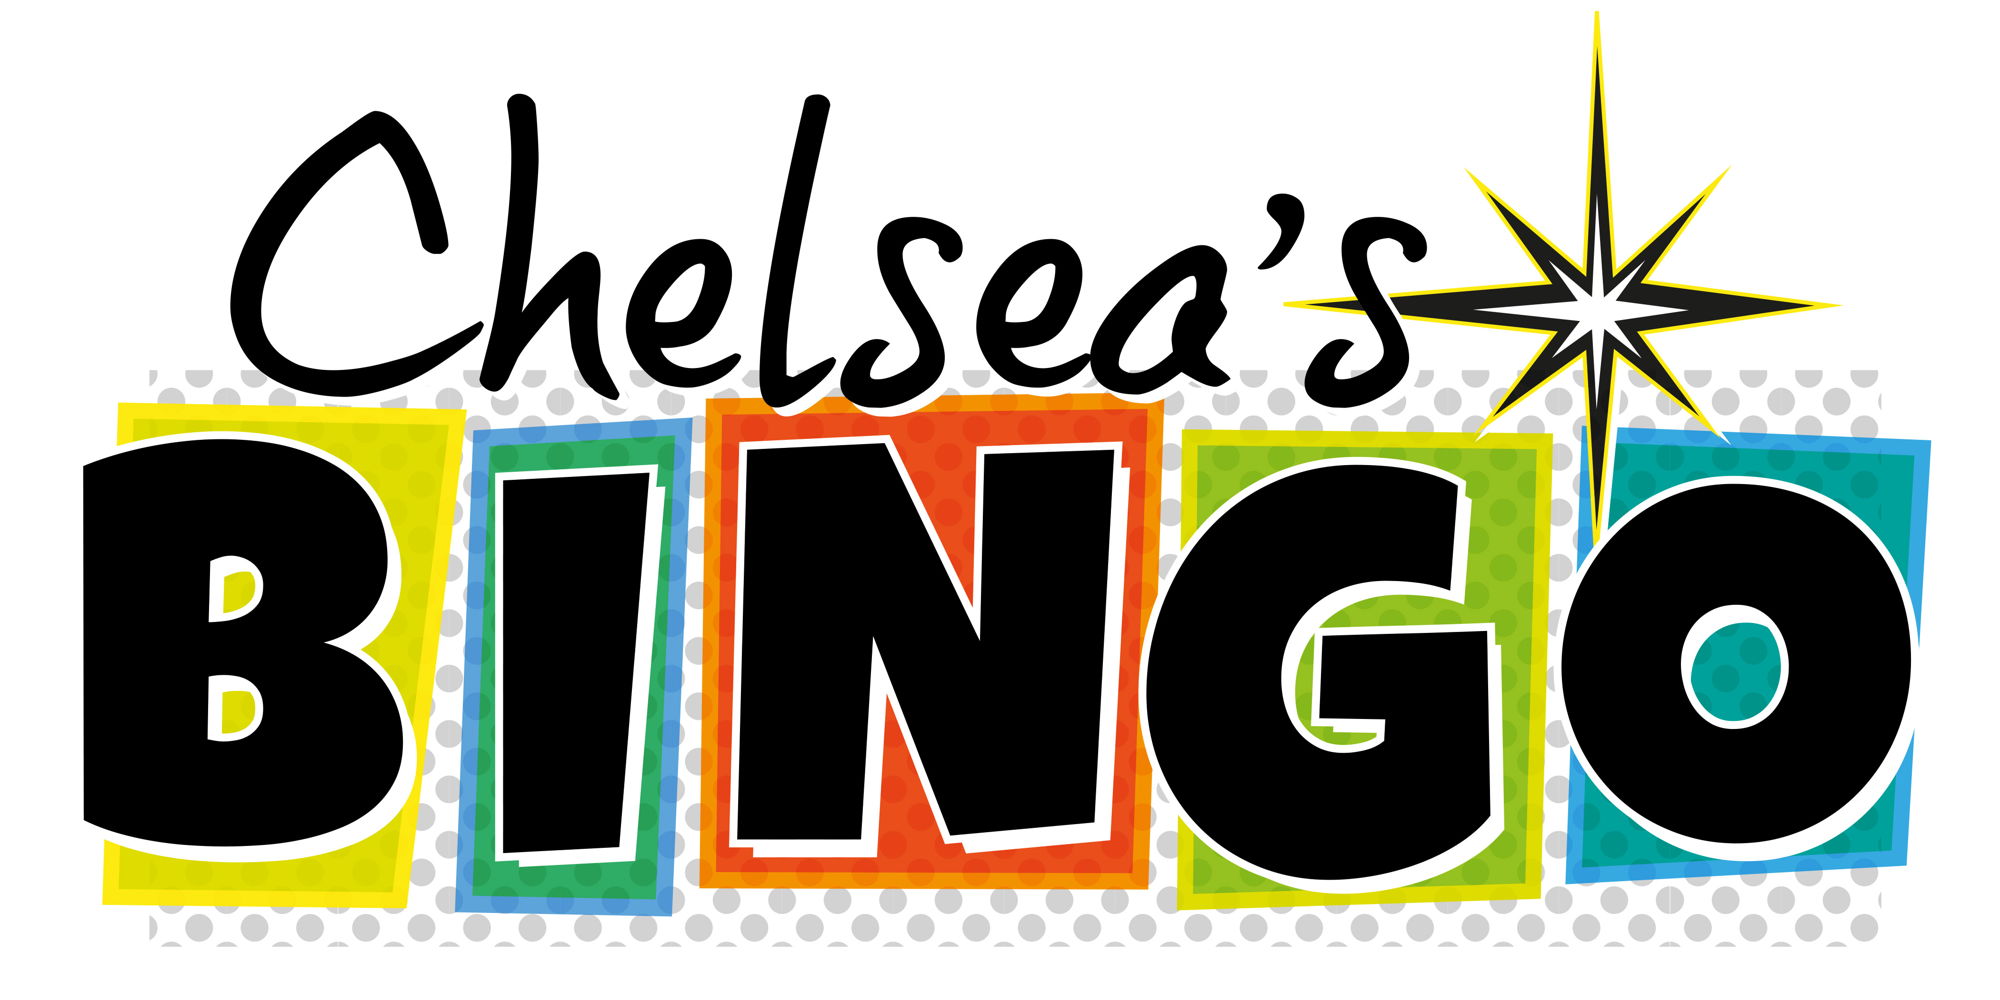 Chelsea's Bingo Sunday Morning promotional image